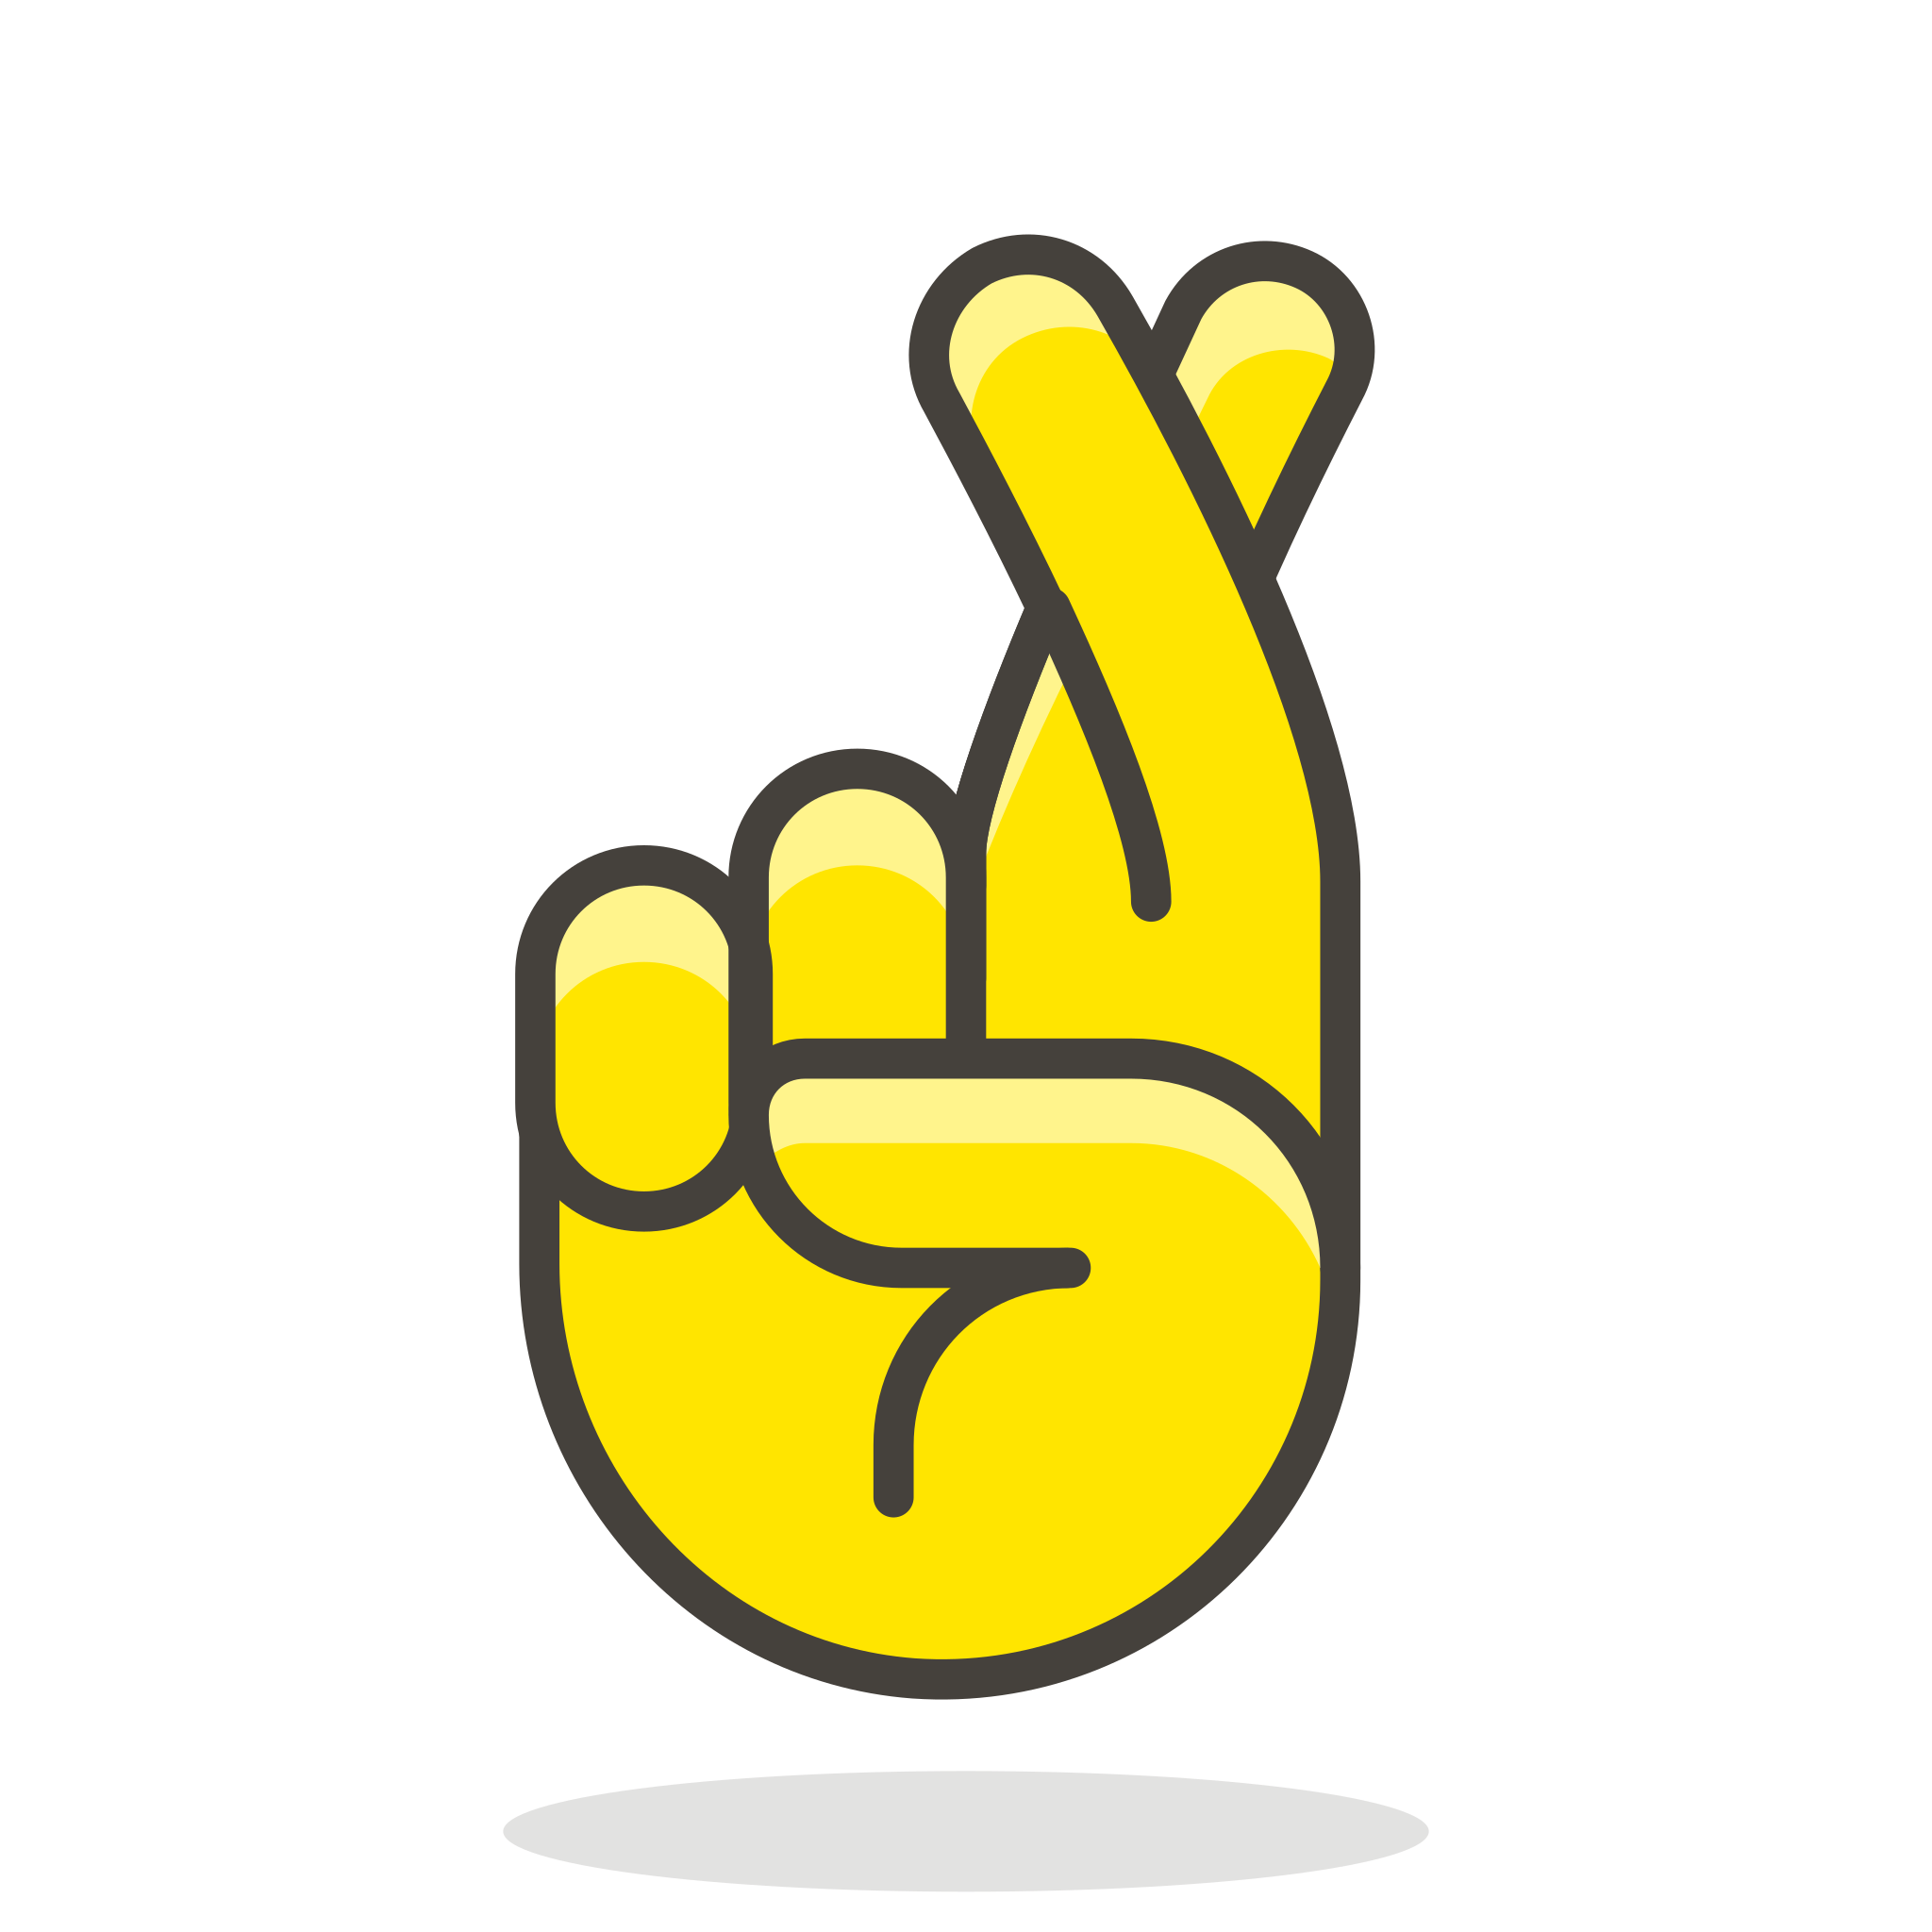 Crossed fingers emoji